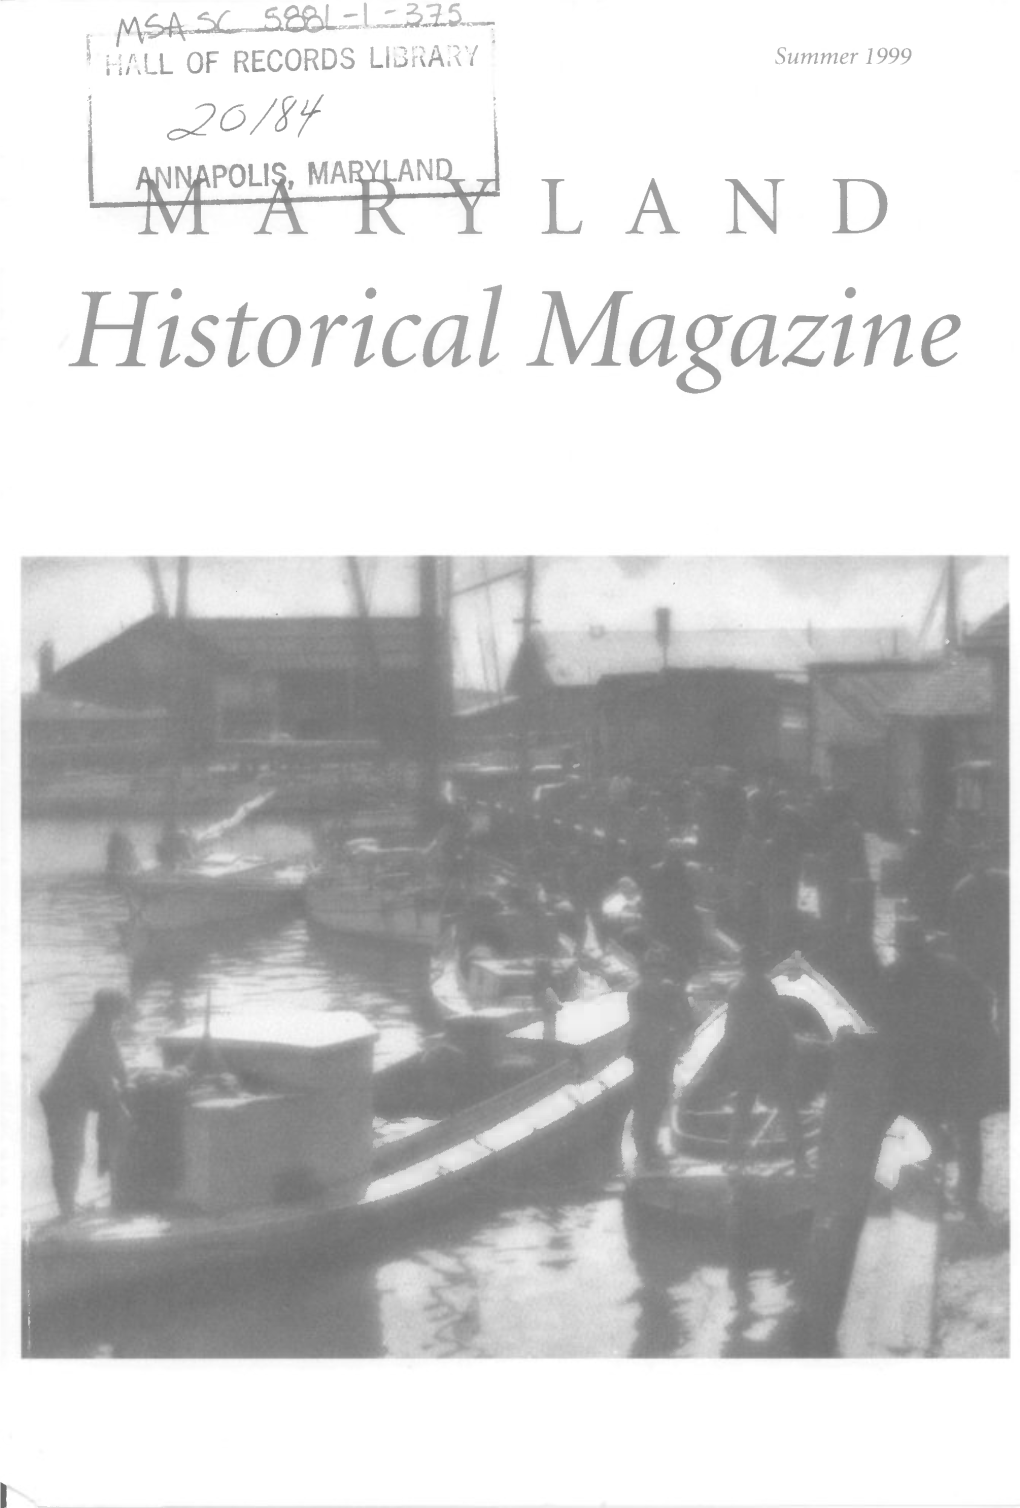 Maryland Historical Magazine, 1999, Volume 94, Issue No. 2